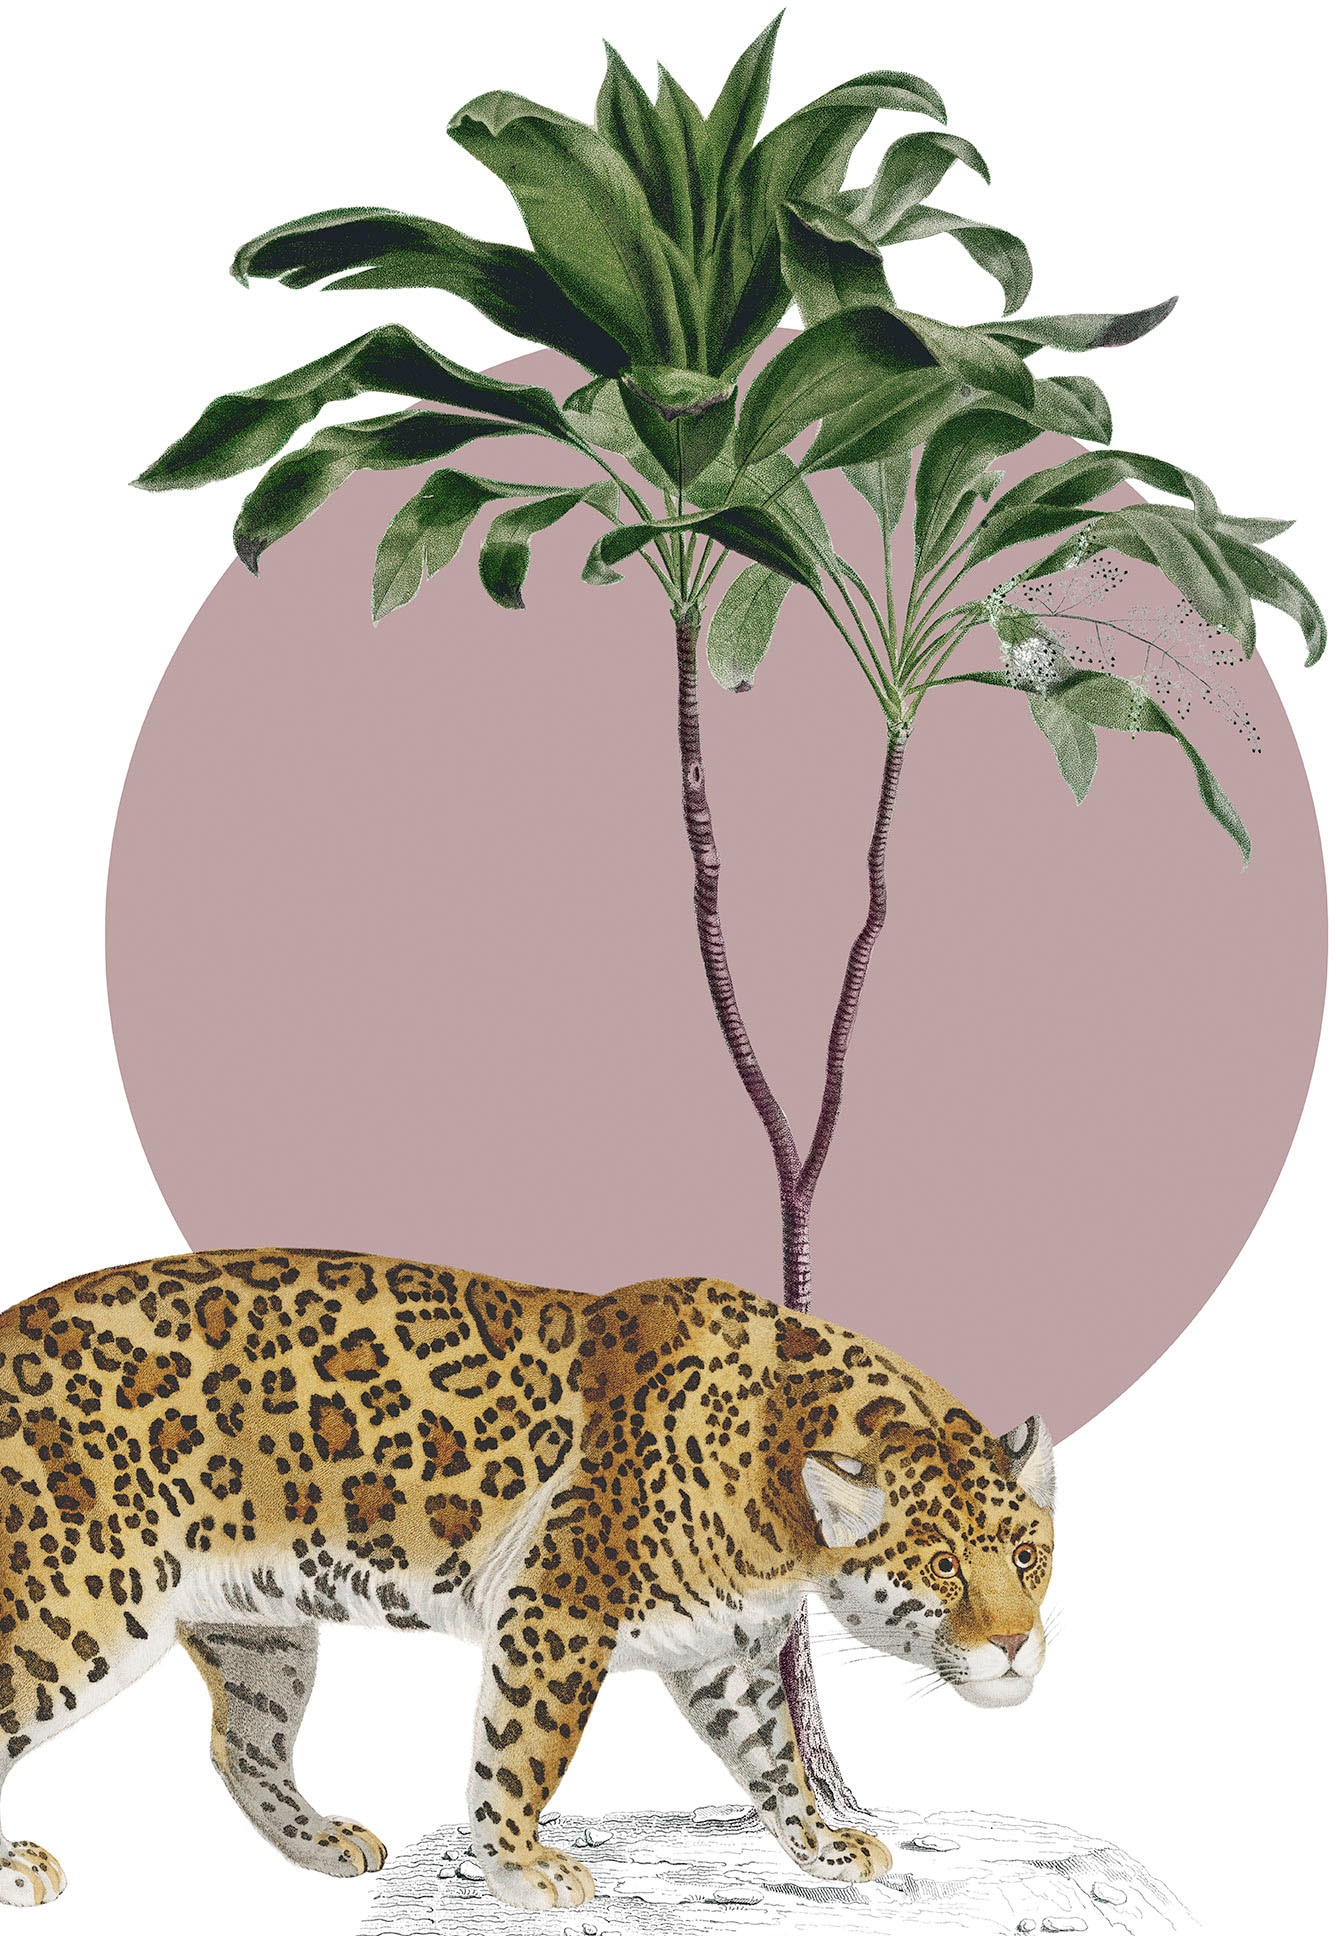 Komar Wandbild »Botanical Garden Jaguar«, (1 St.), Deutsches Premium-Poster  Fotopapier mit seidenmatter Oberfläche und hoher Lichtbeständigkeit. Für  fotorealistische Drucke mit gestochen scharfen Details und hervorragender  Farbbrillanz. online